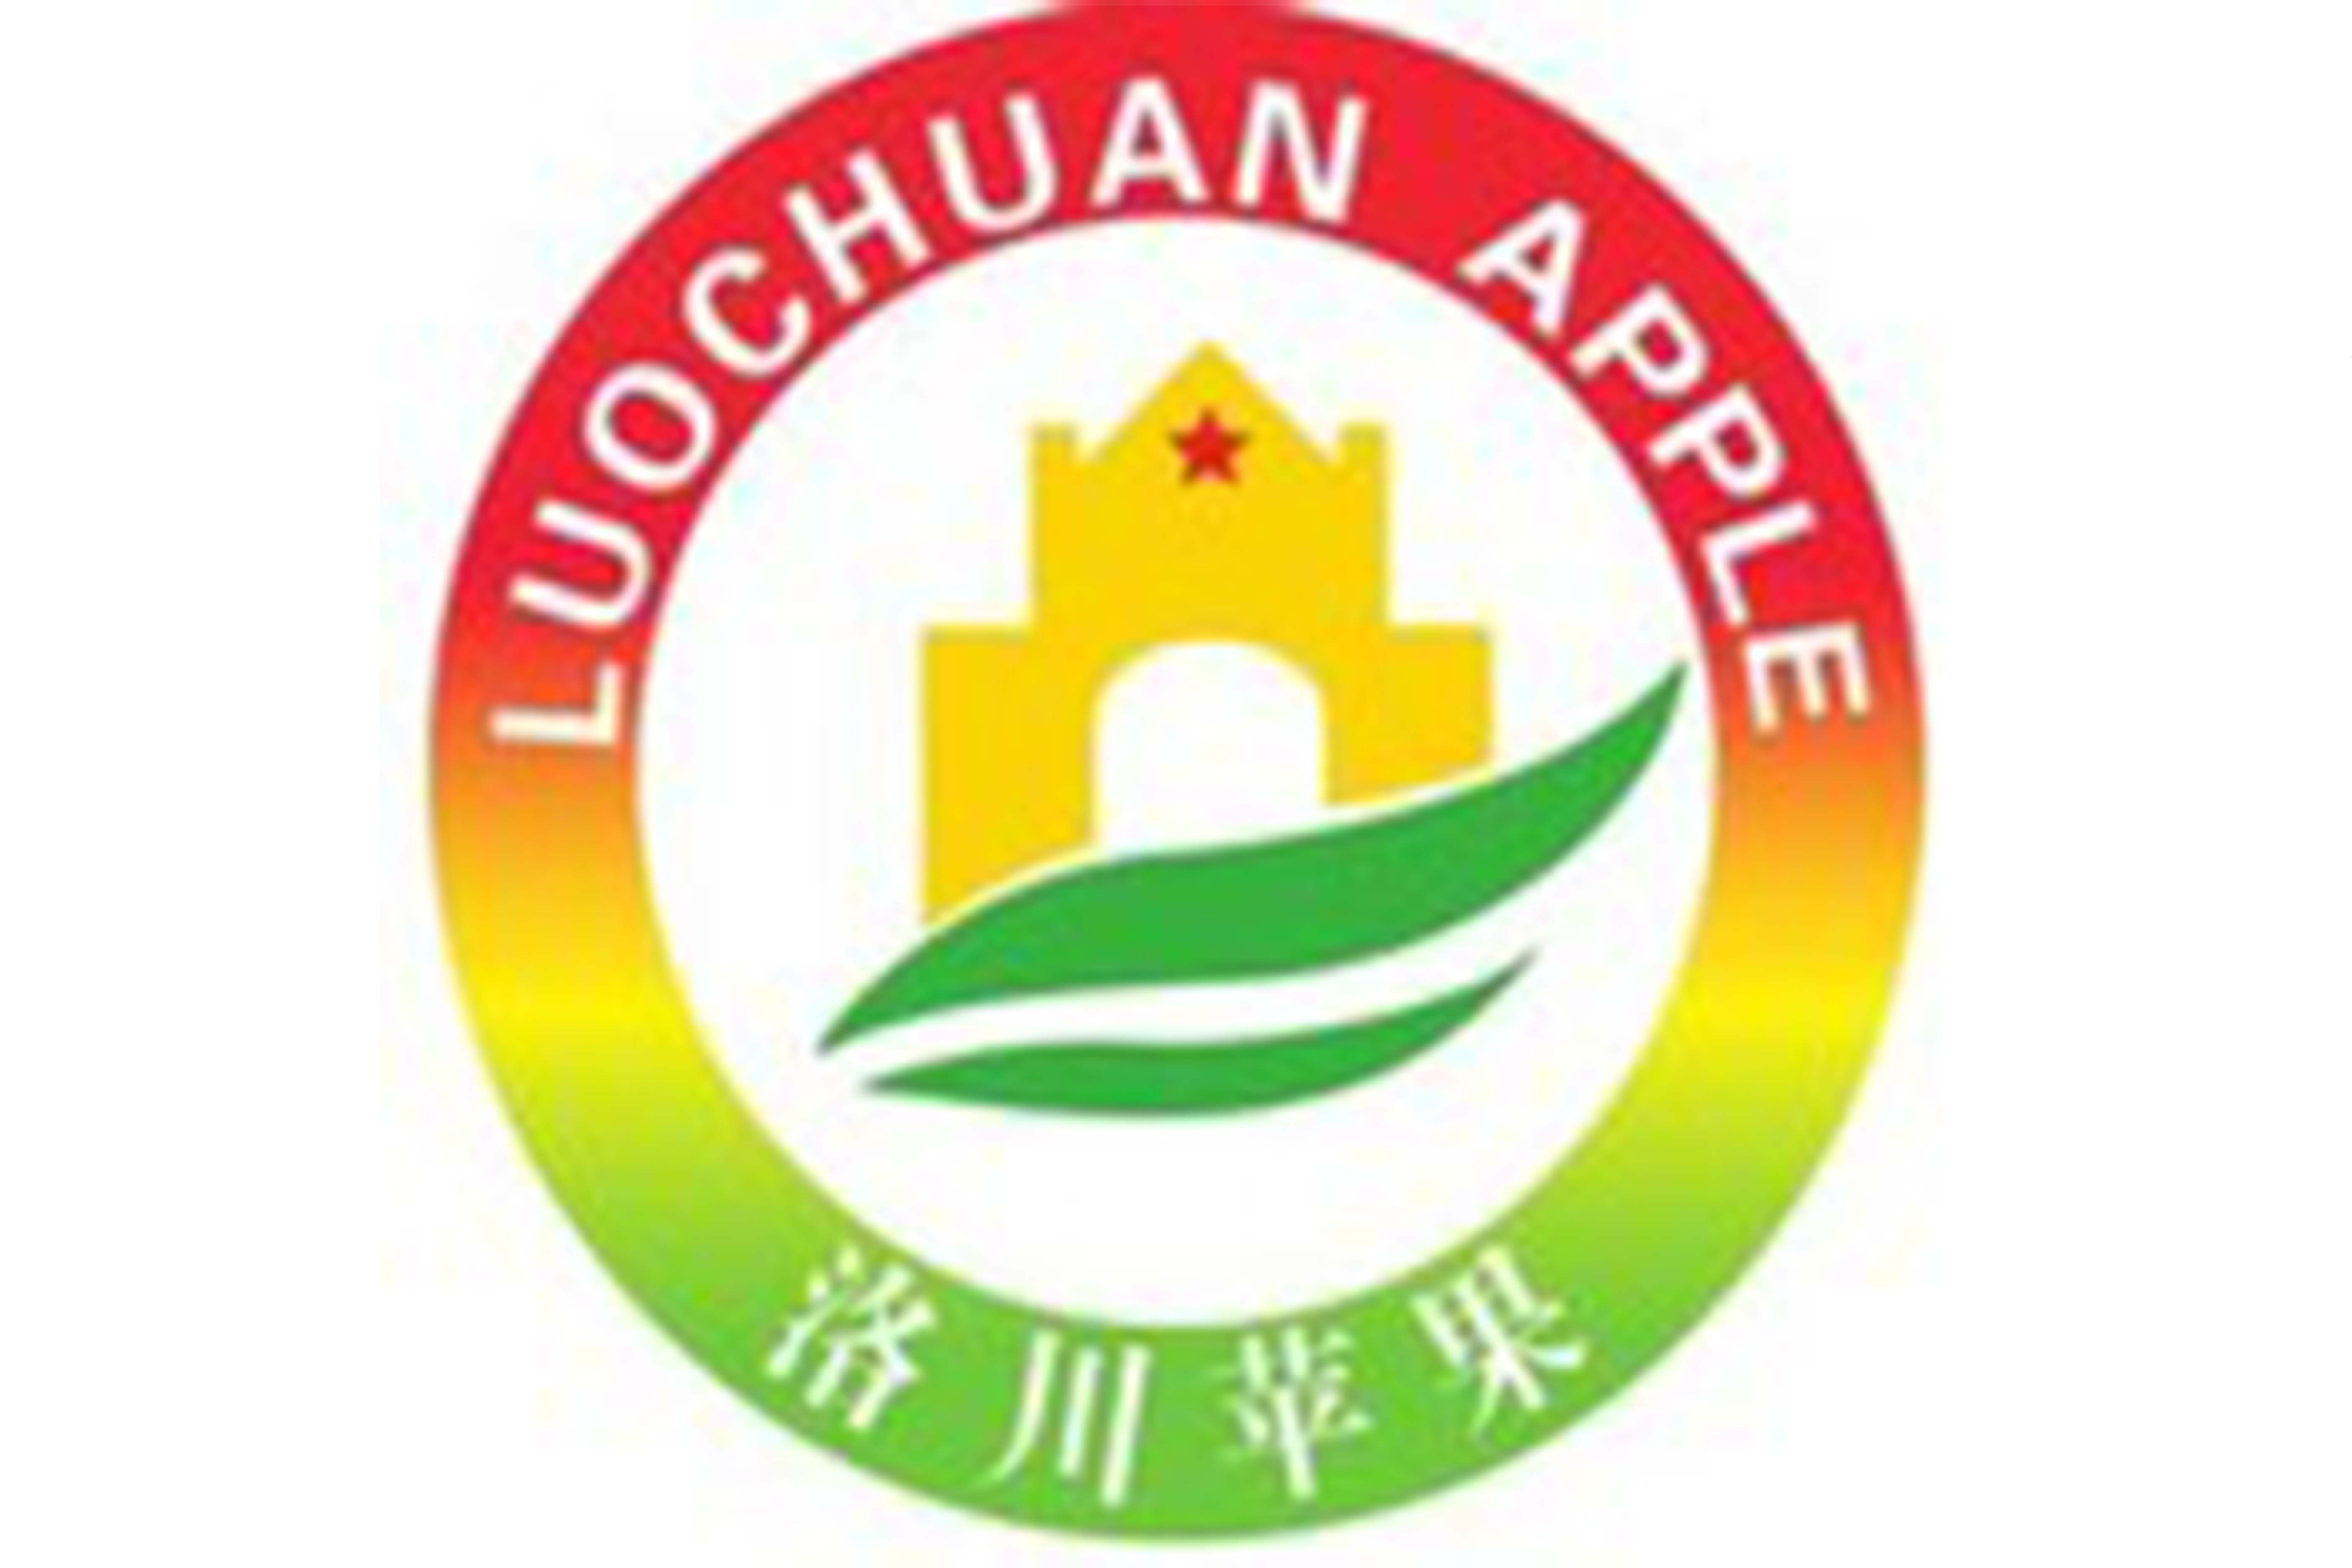 洛川苹果,中国陕西省延安市洛川县特产,全国农产品地理标志.